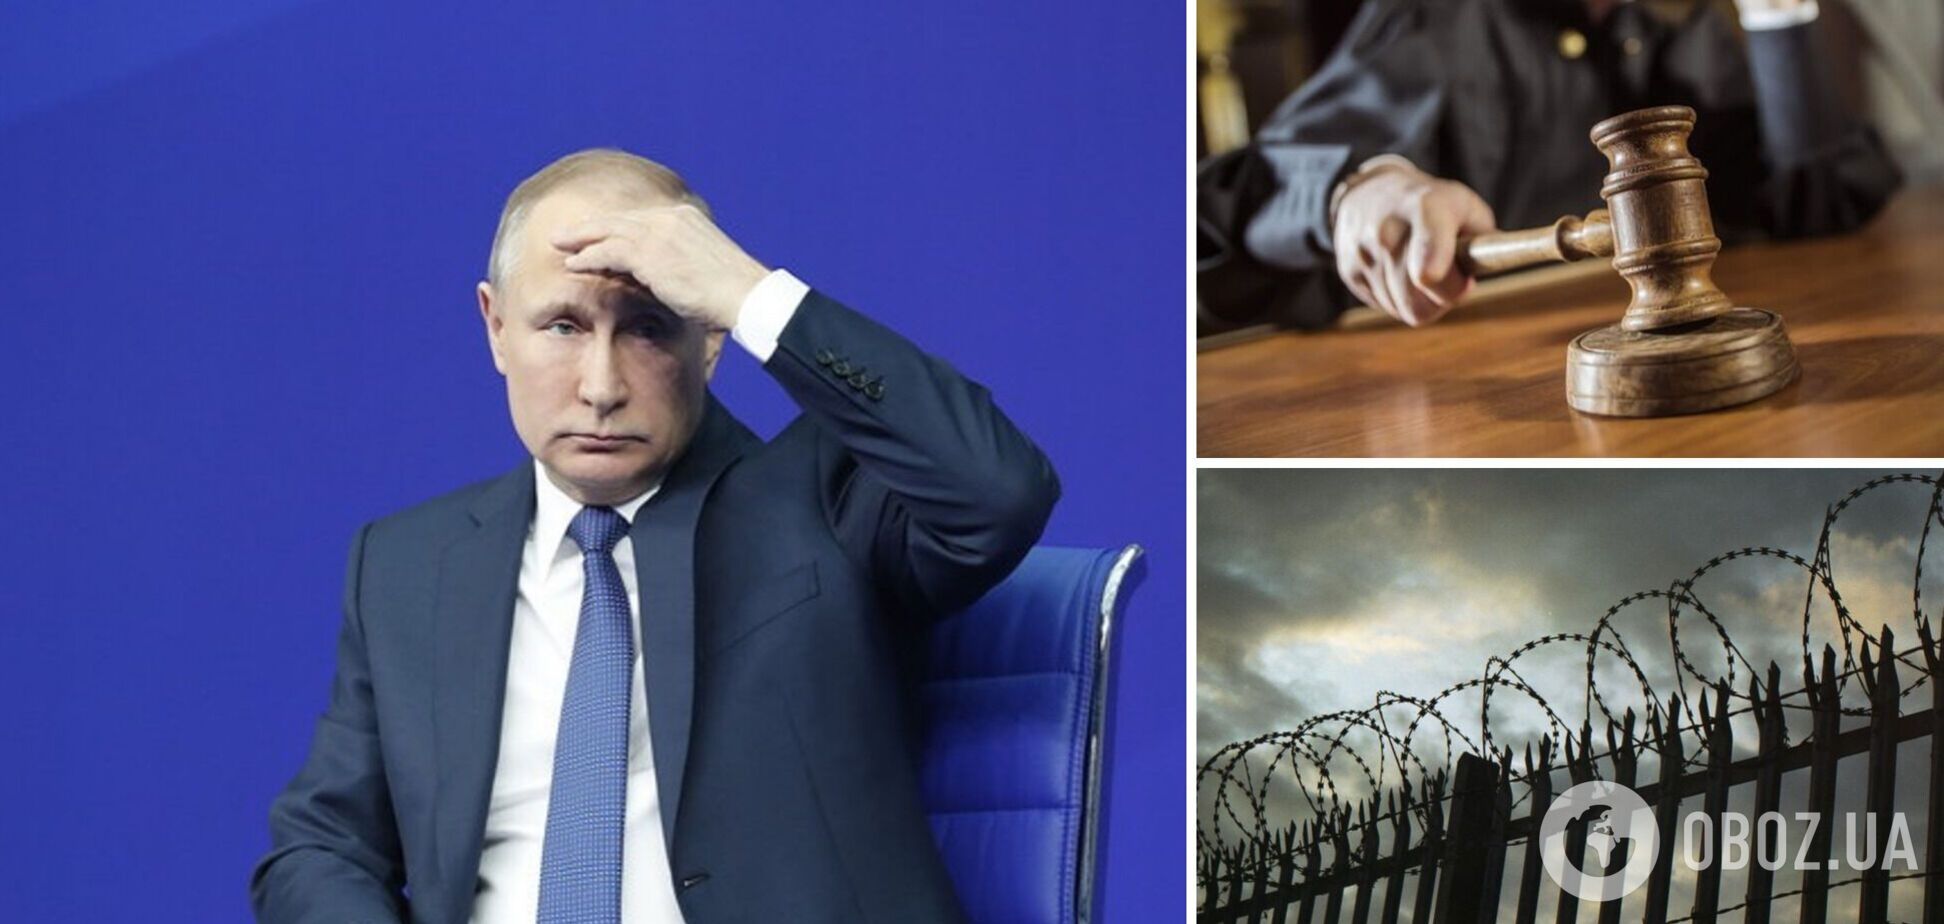 Страх ареста и покушения на жизнь: Владимир Путин боится уехать за границы России даже на нейтральный саммит